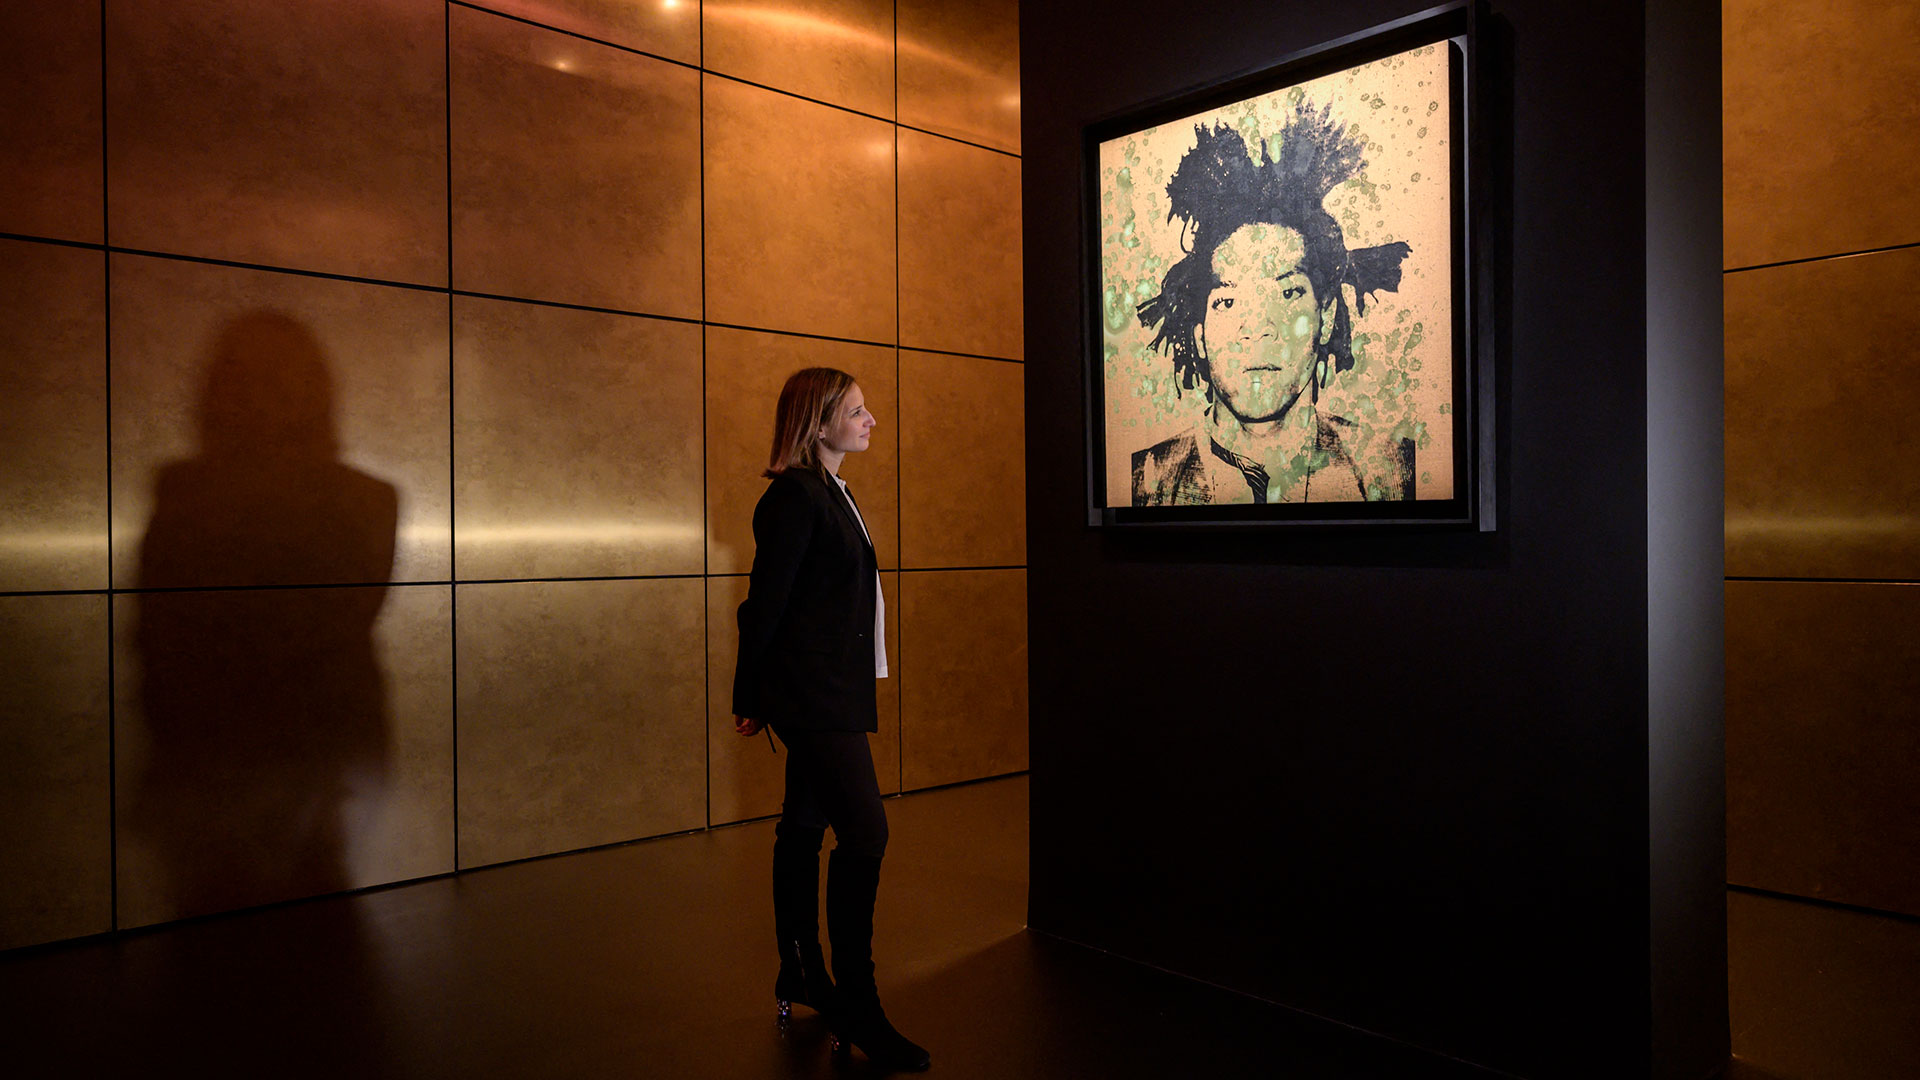 El retrato de Jean-Michel Basquiat por Andy Warhol alcanzó los 40 millones de dólares en la subasta de Christie's (AFP)